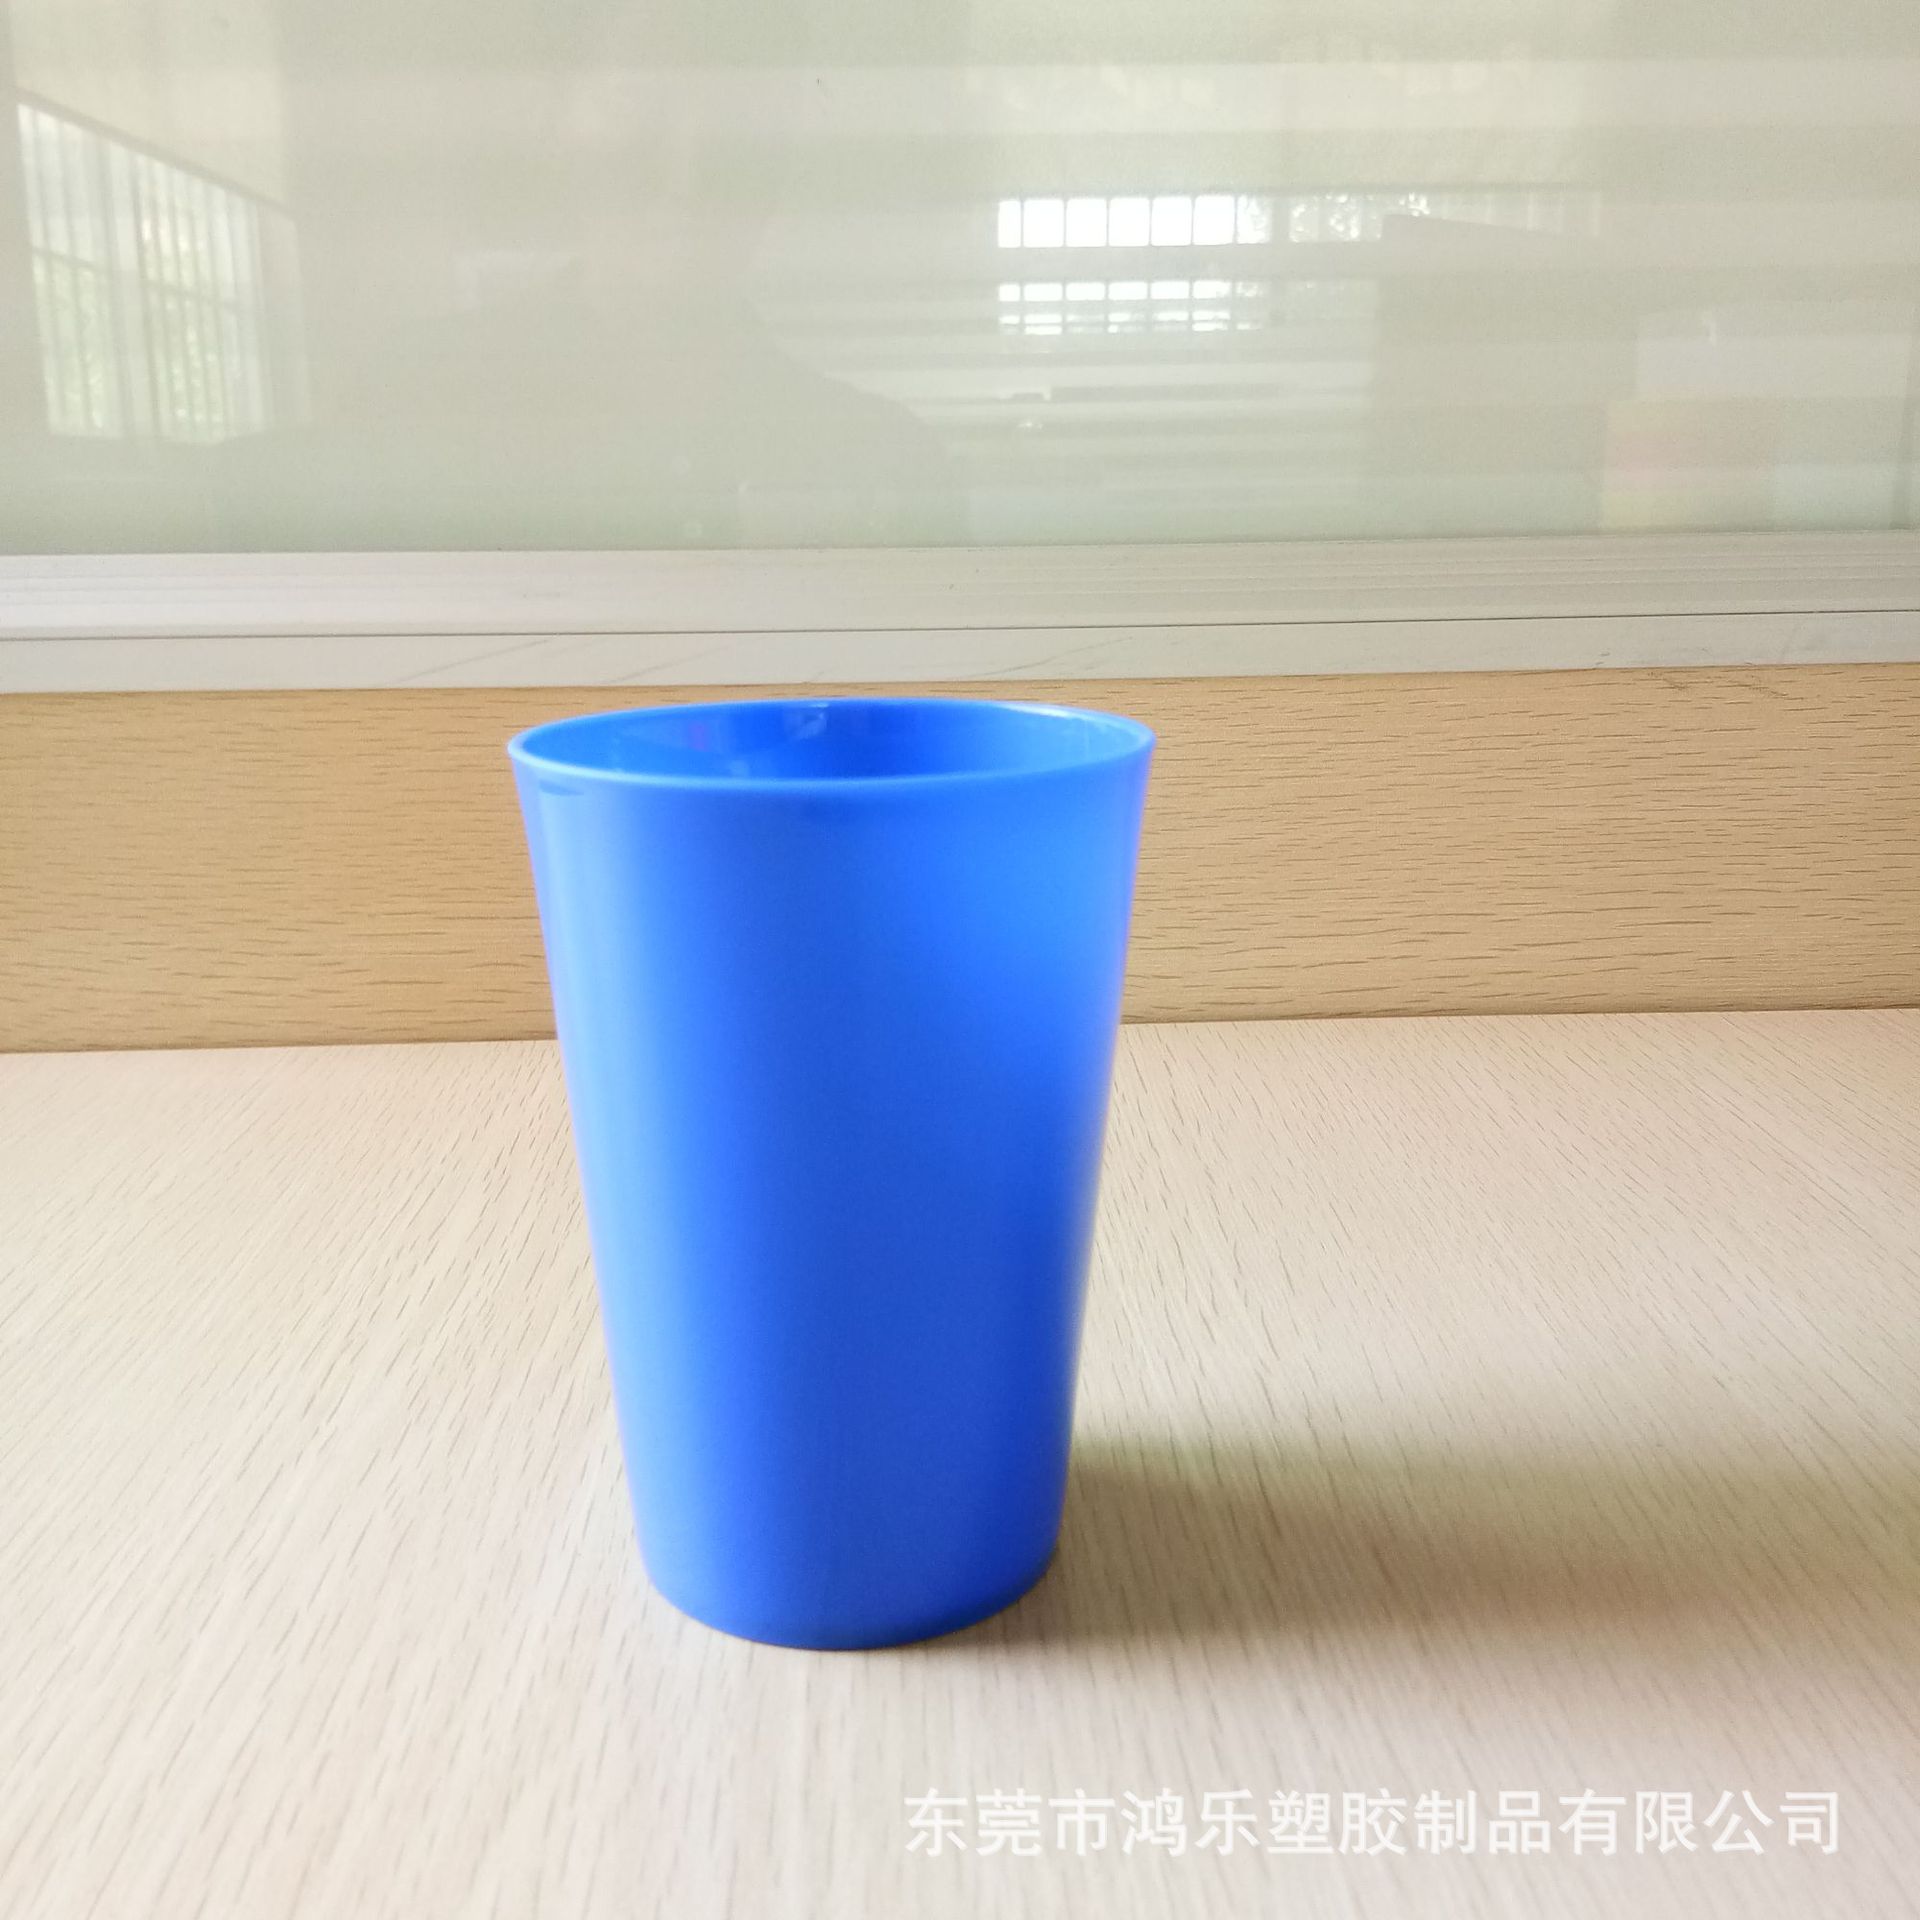 出口日本食品级彩色PP塑料杯红色塑料饮料杯厂家直销广告杯礼品杯示例图18